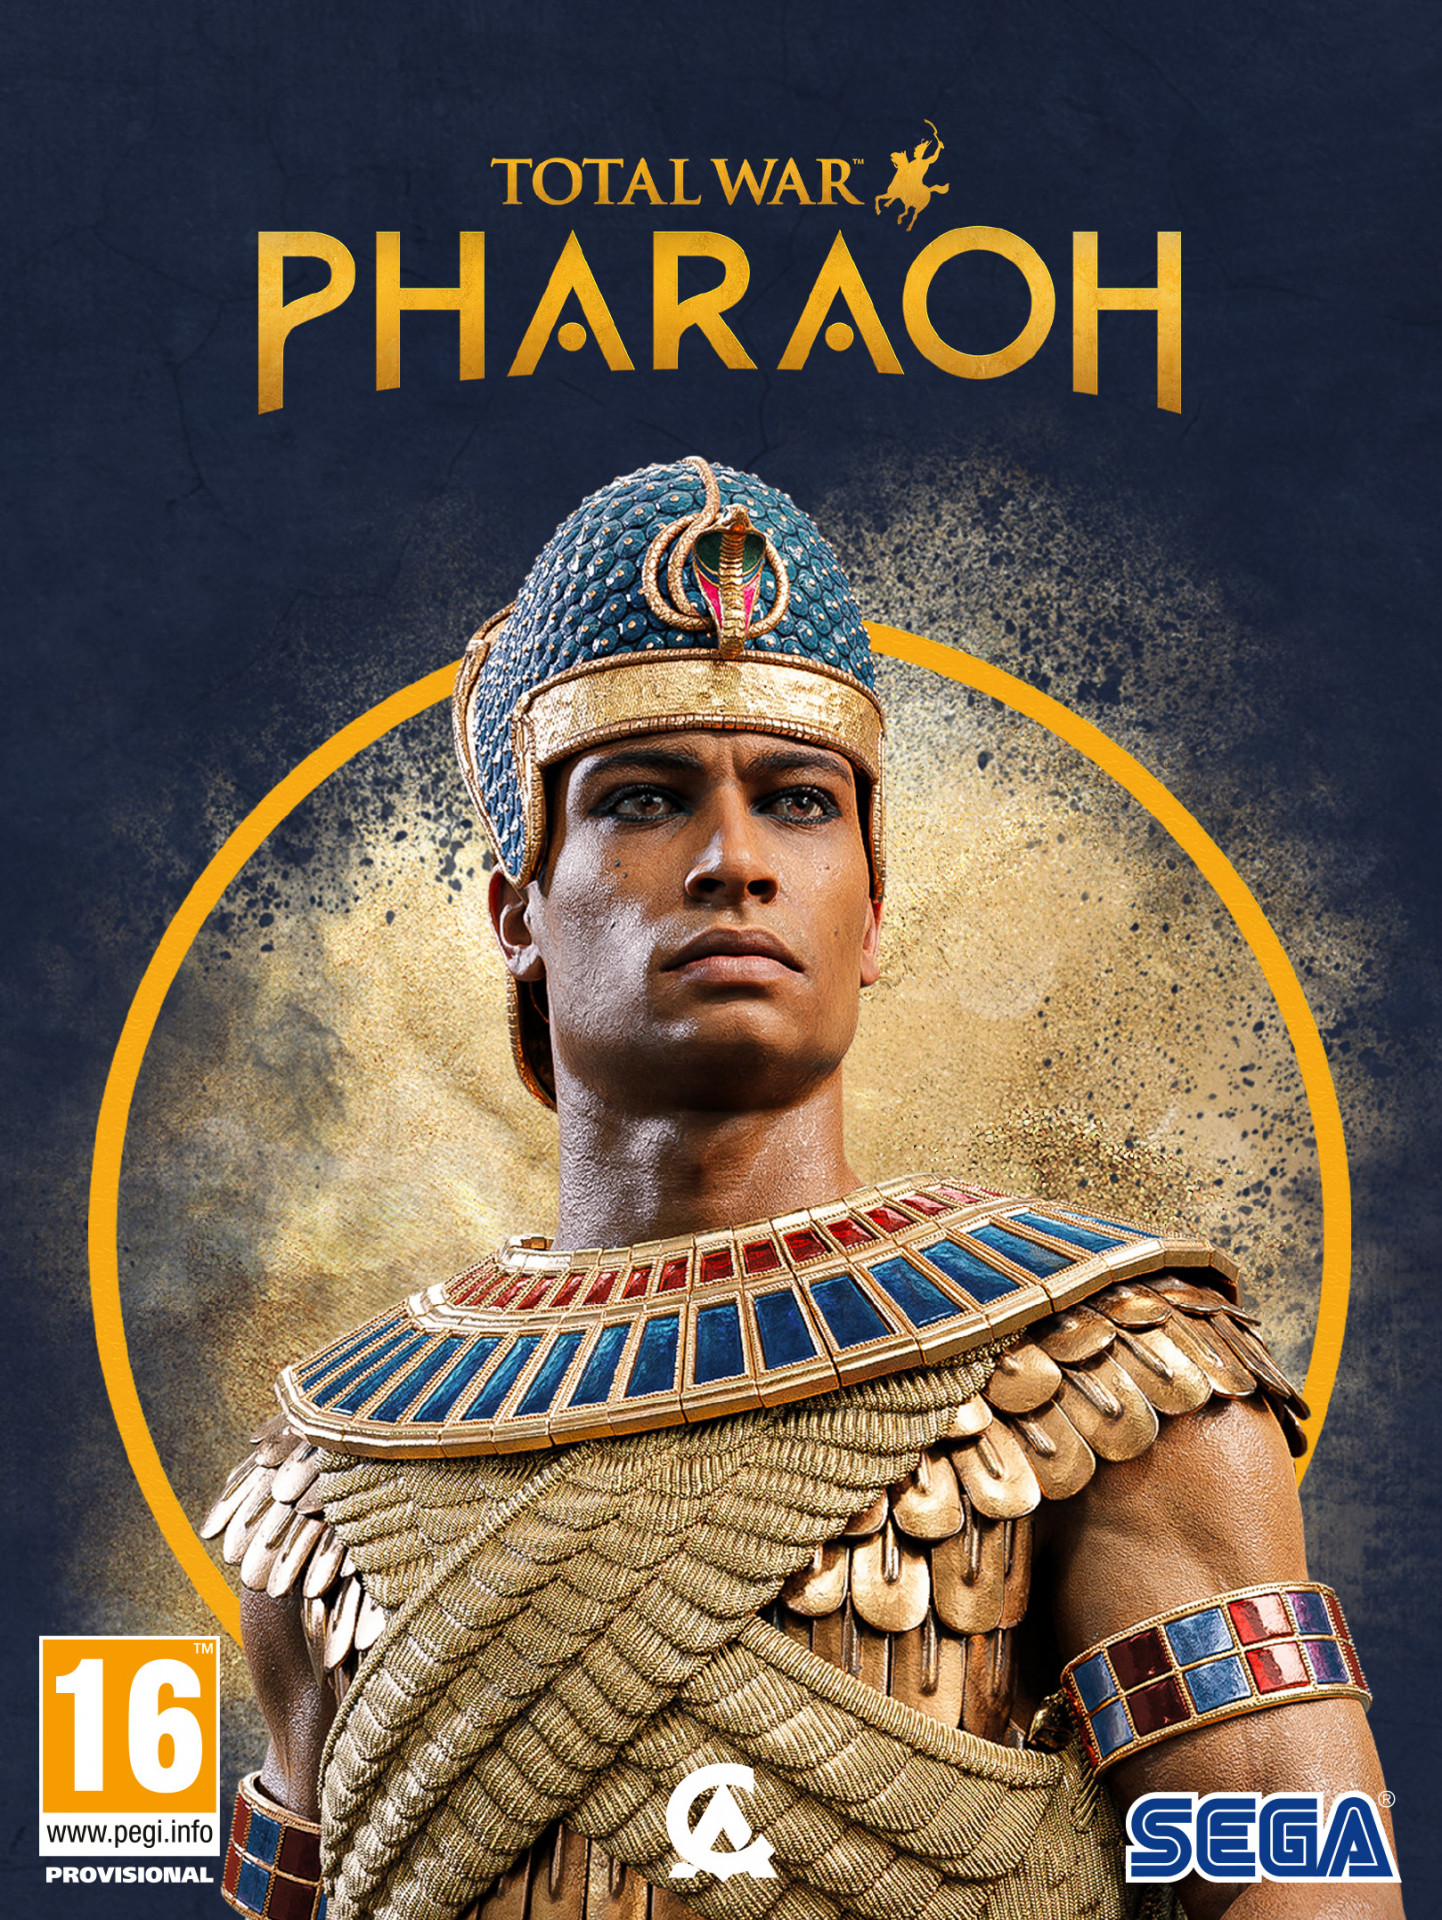 Total War: Pharaoh (PC), SEGA